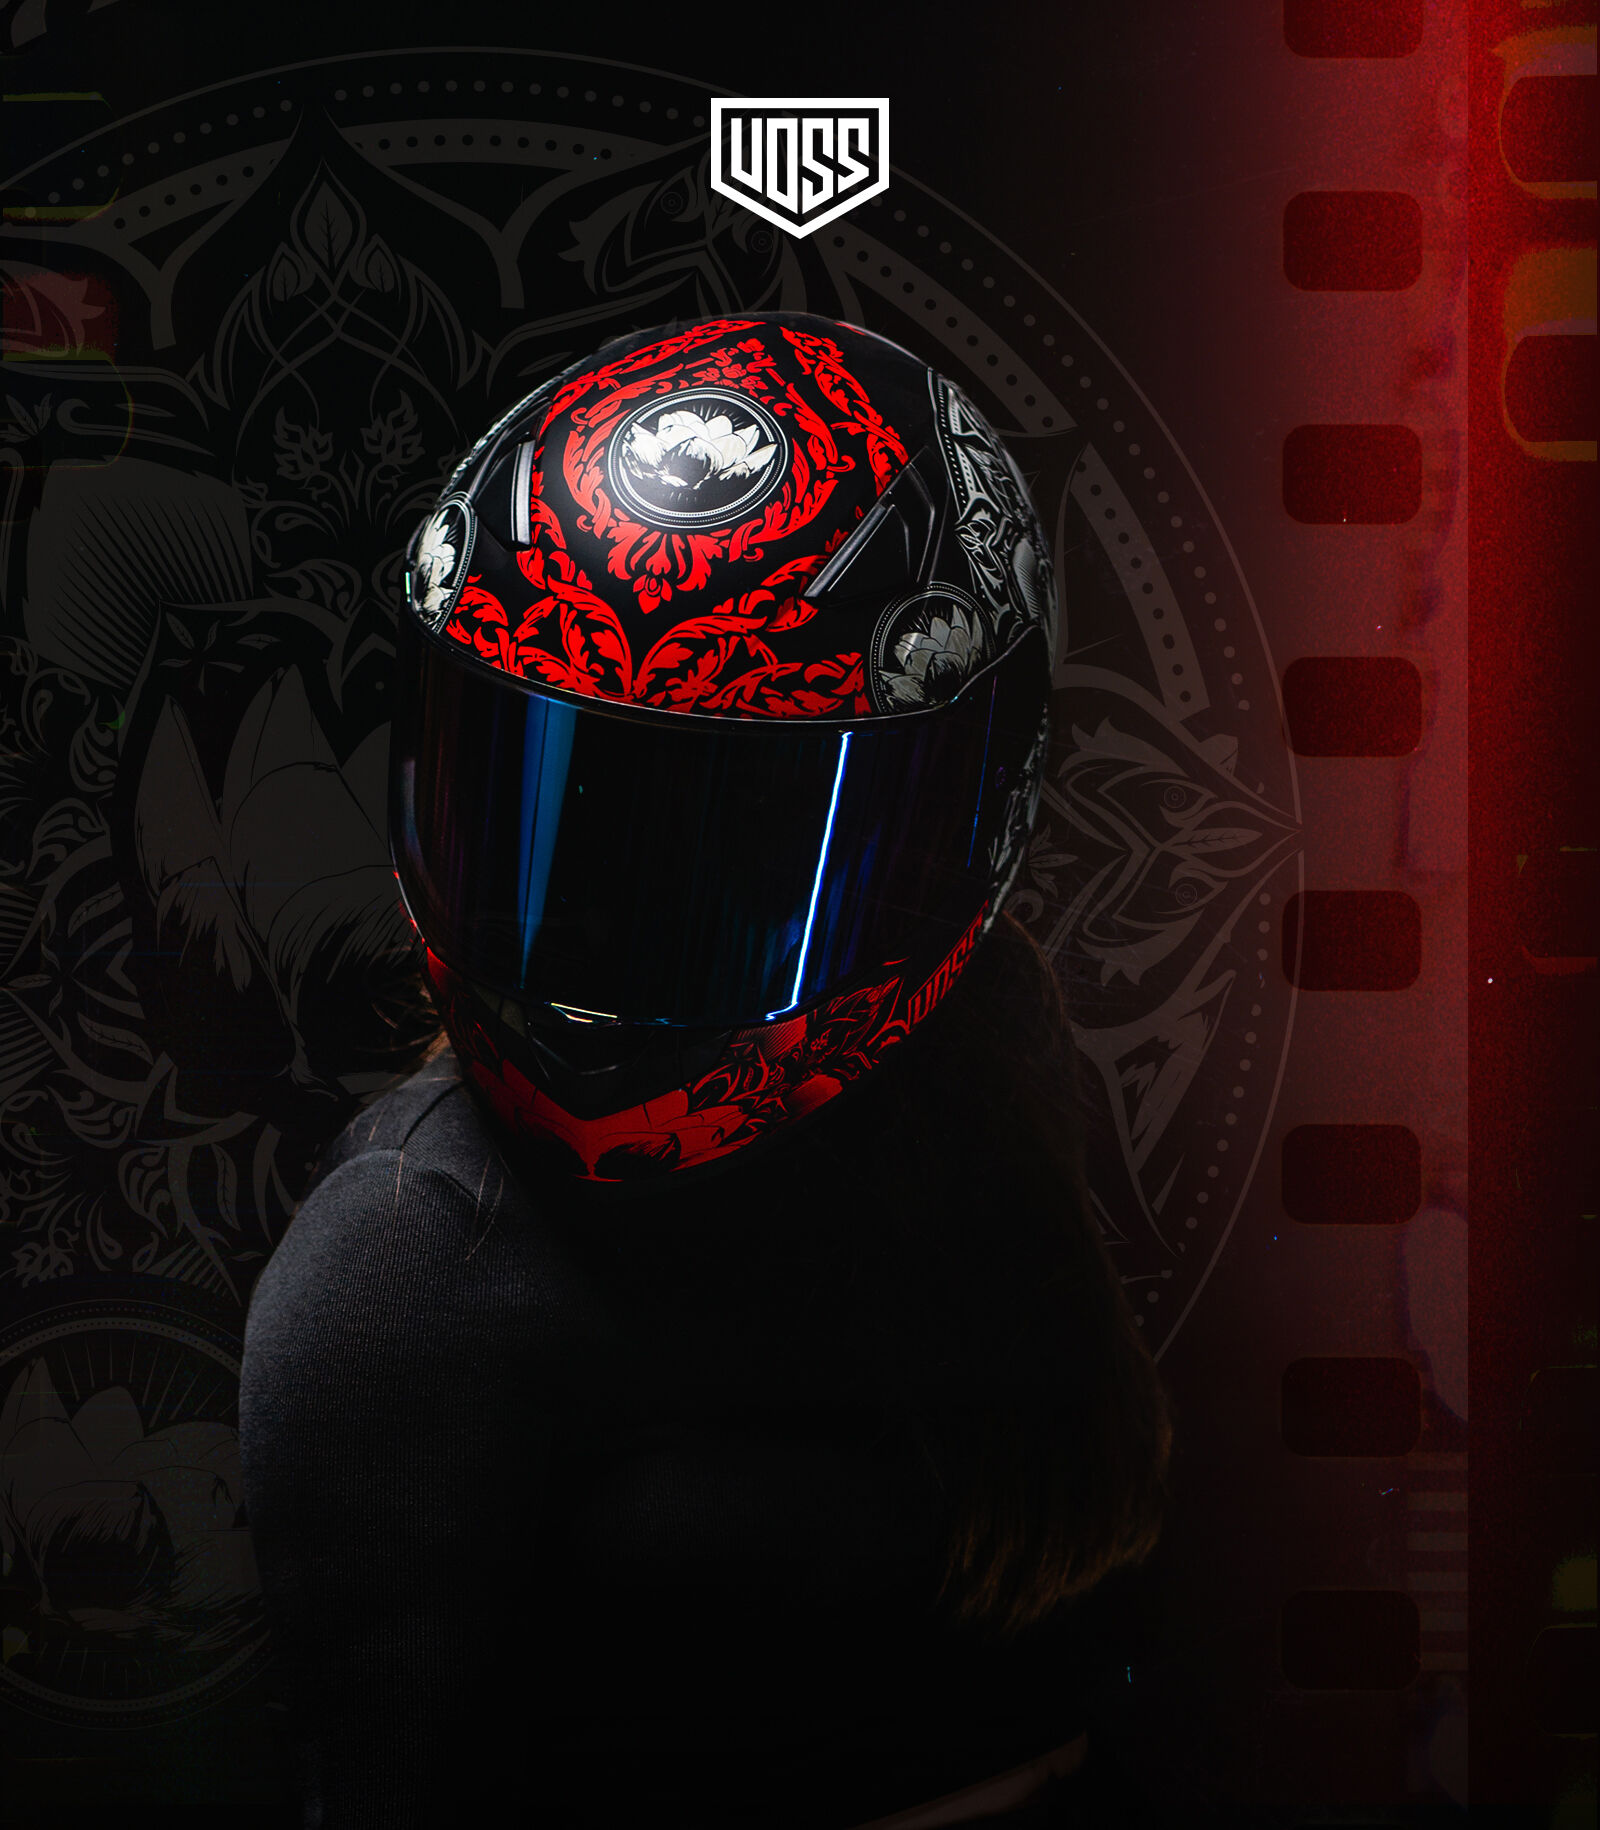 Voss 988 Moto-1 Full Face Matte Red Mandala Helmet